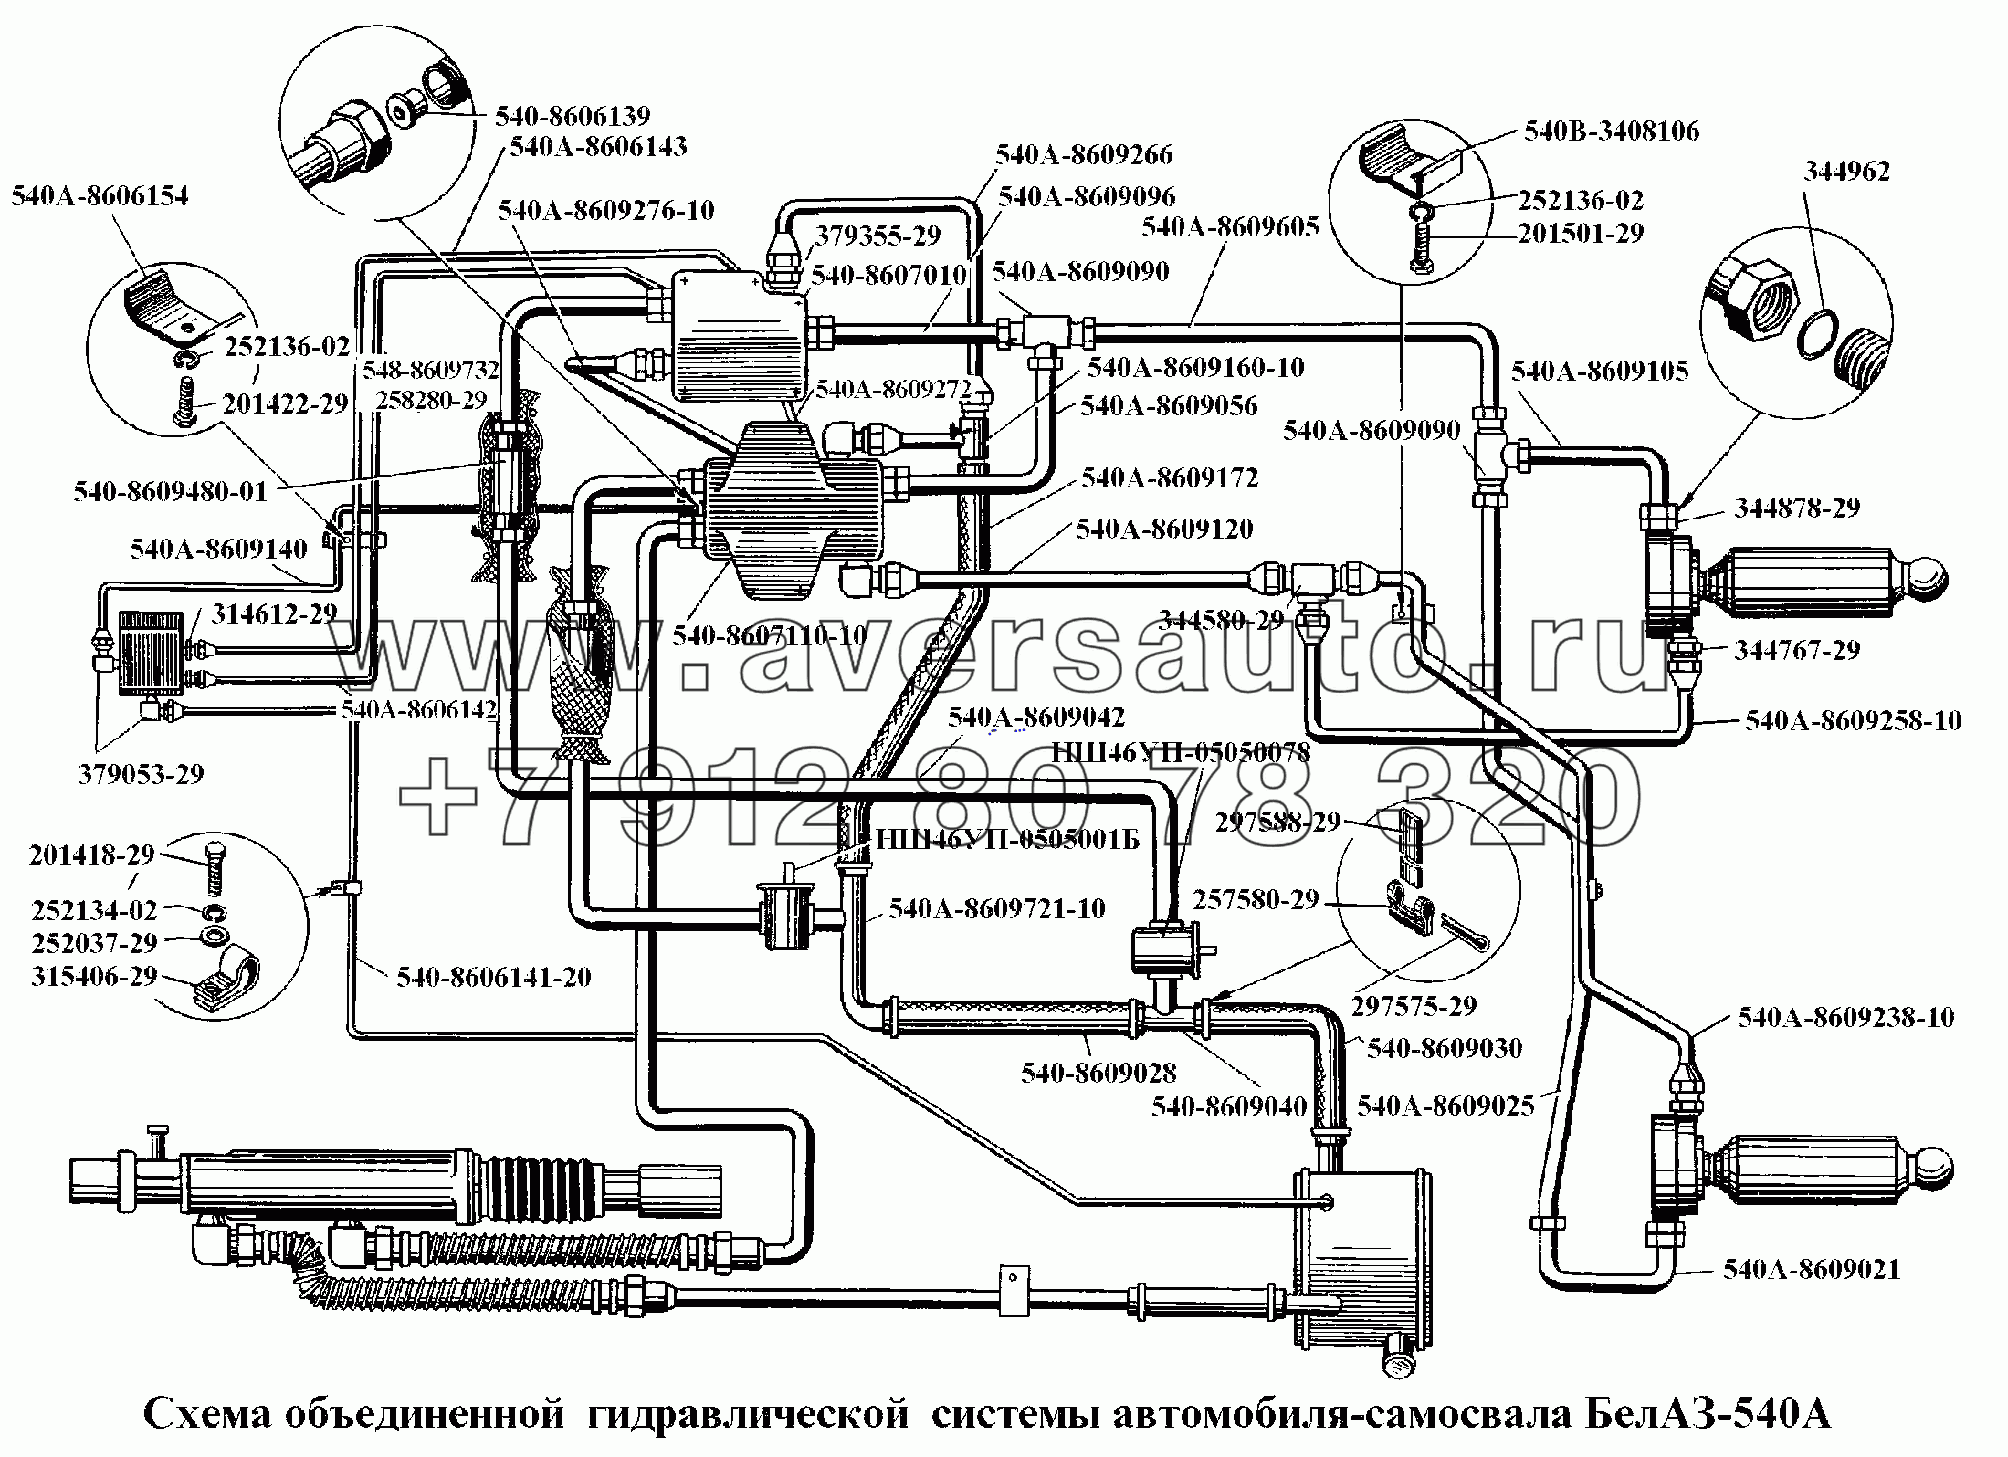 Схема объединенной гидравлической системы